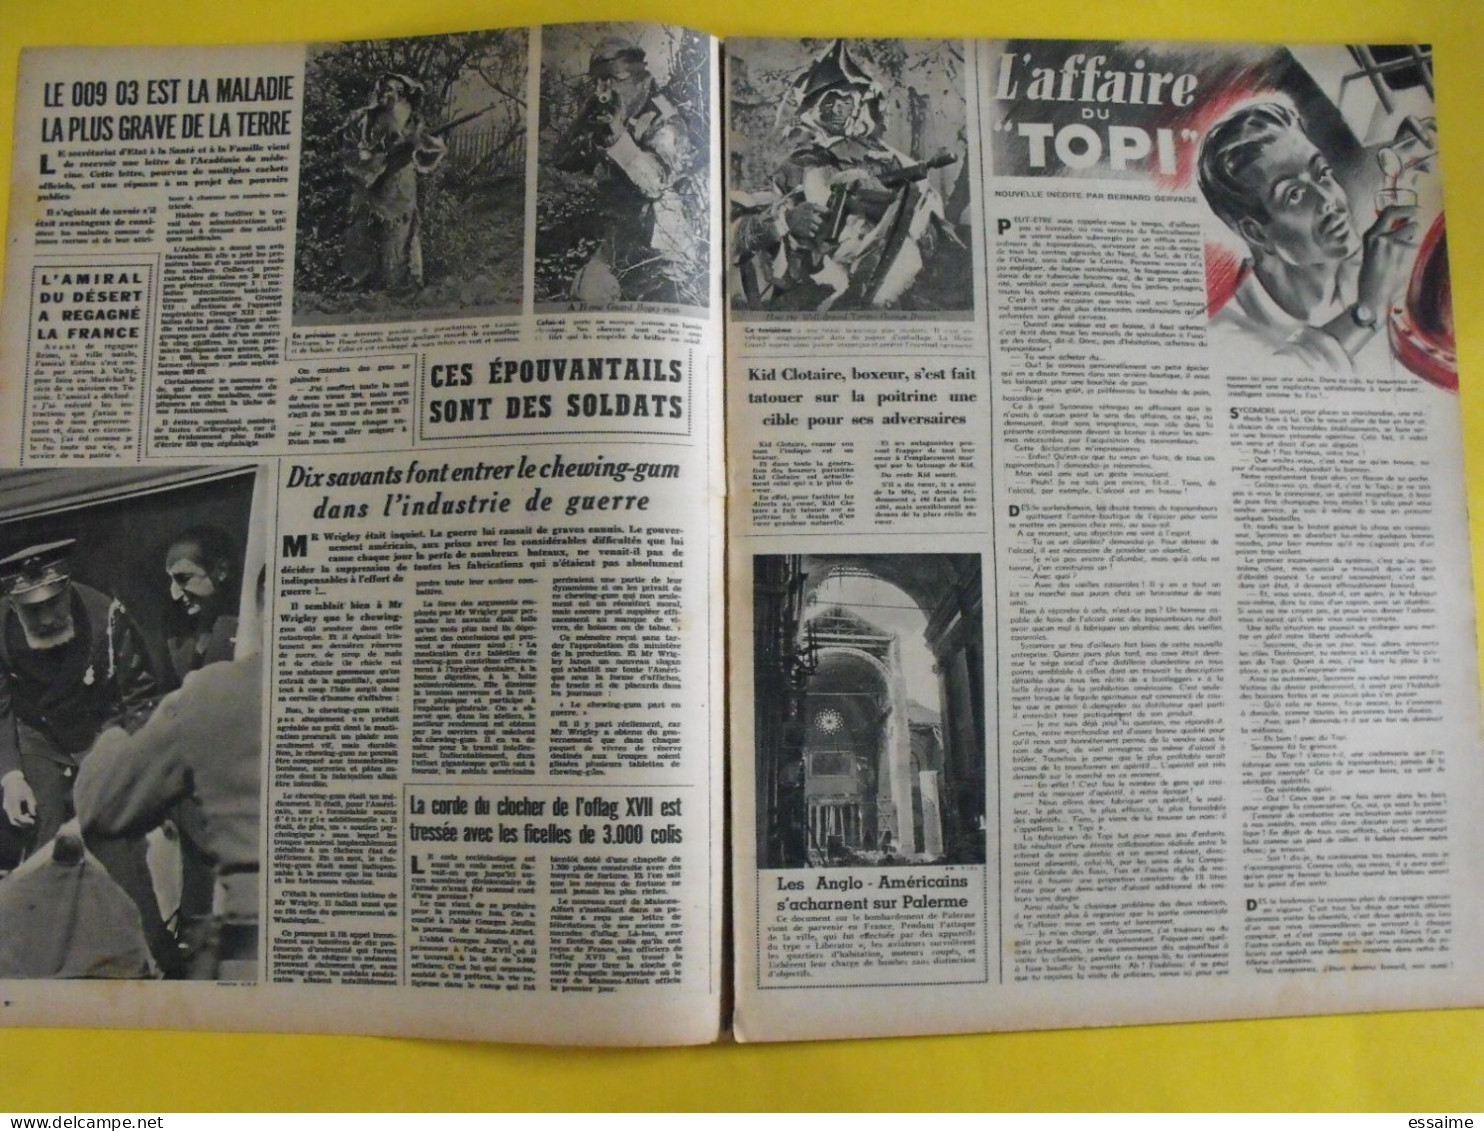 6 revues La semaine de 1943. actualités guerre photos collaboration moscou  martinique laval fuhrer katyn  raimu baquet